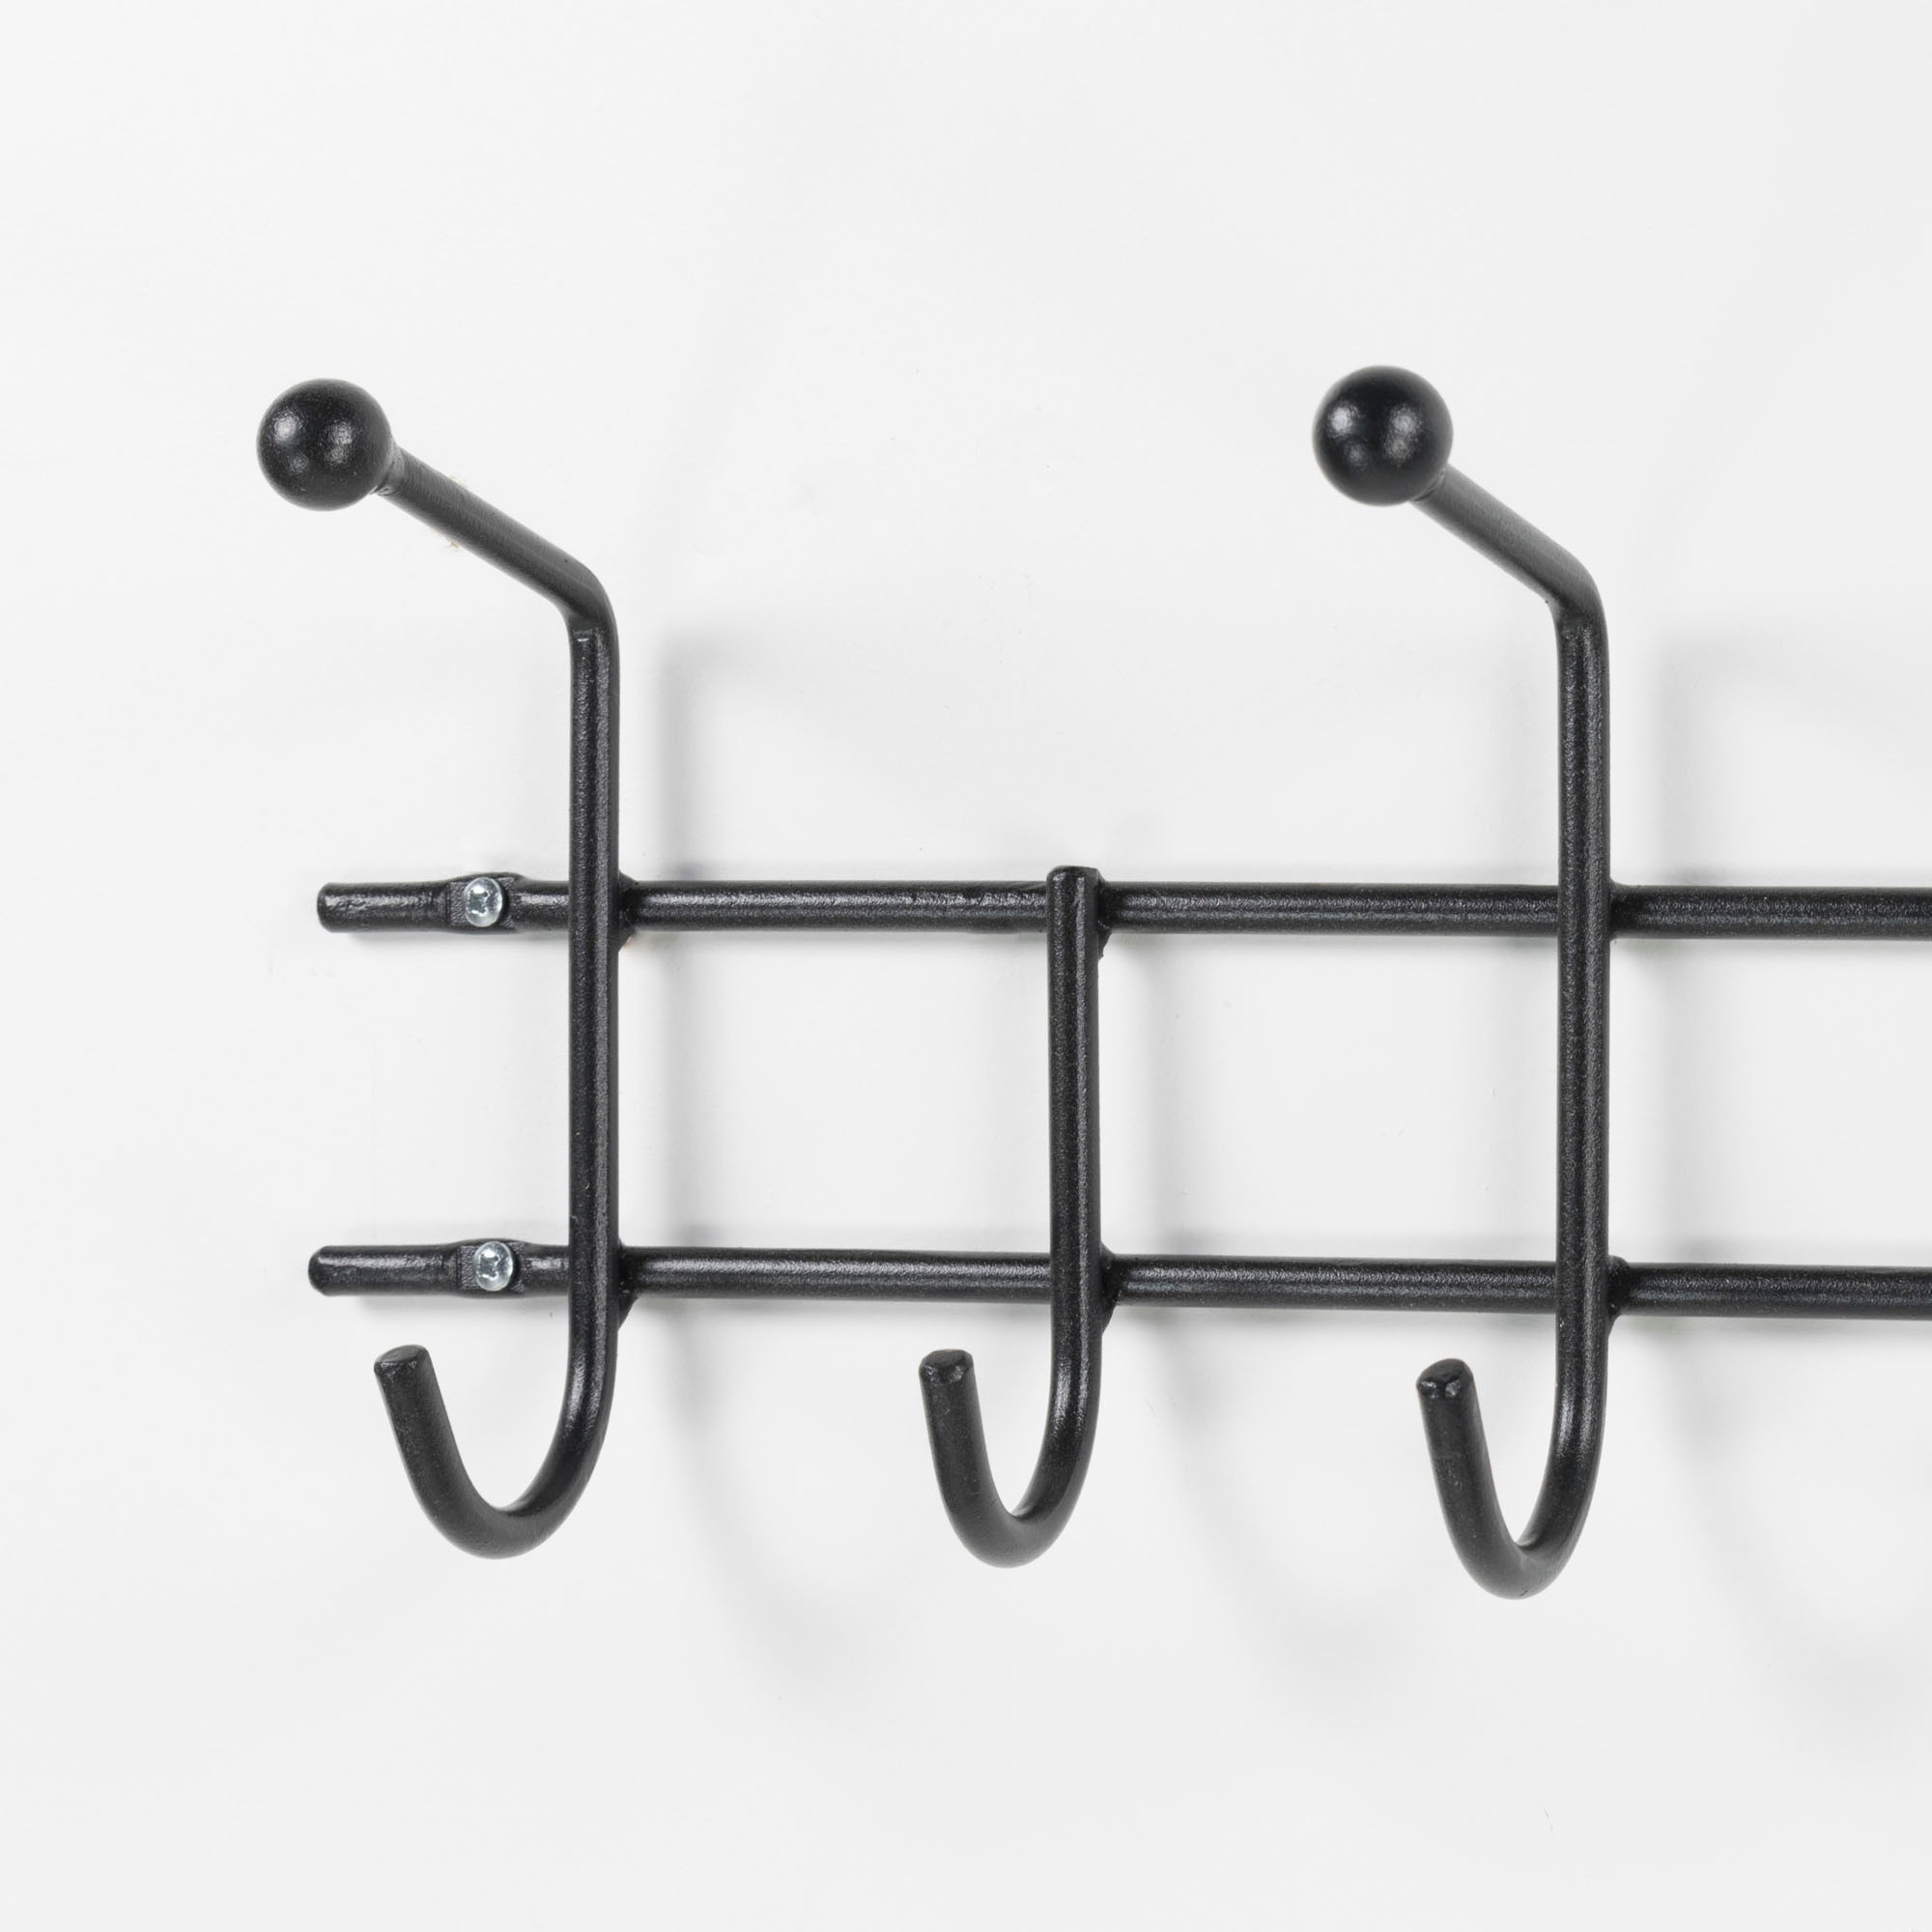 Spinder Design Garderobenhalter »Barato«, Metall, Breite 119 cm